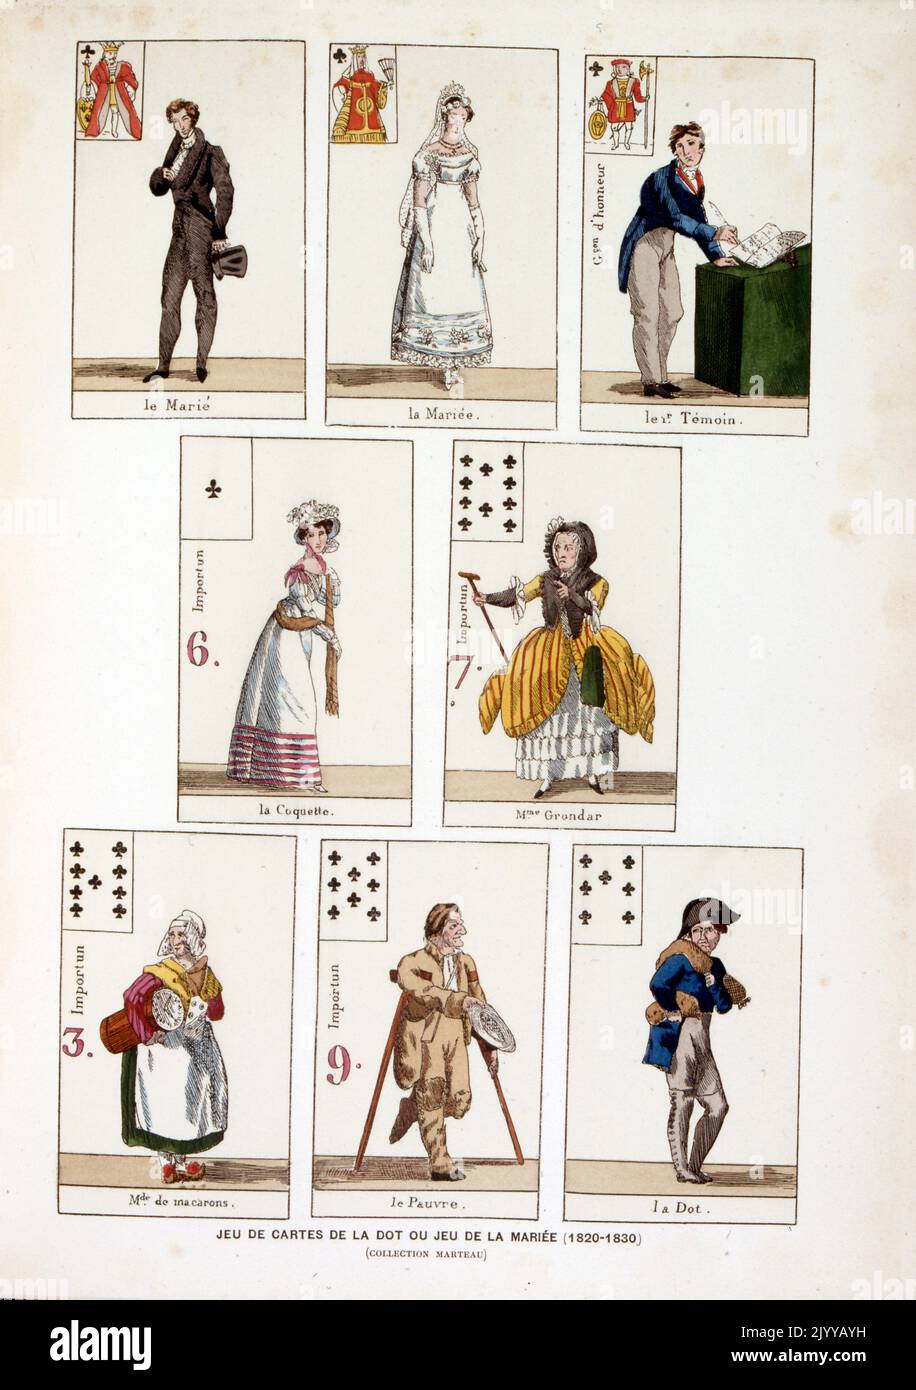 Farbige Darstellung von Spielkarten; das Spiel La dot oder das Spiel der Frau (1820-1830). Stockfoto